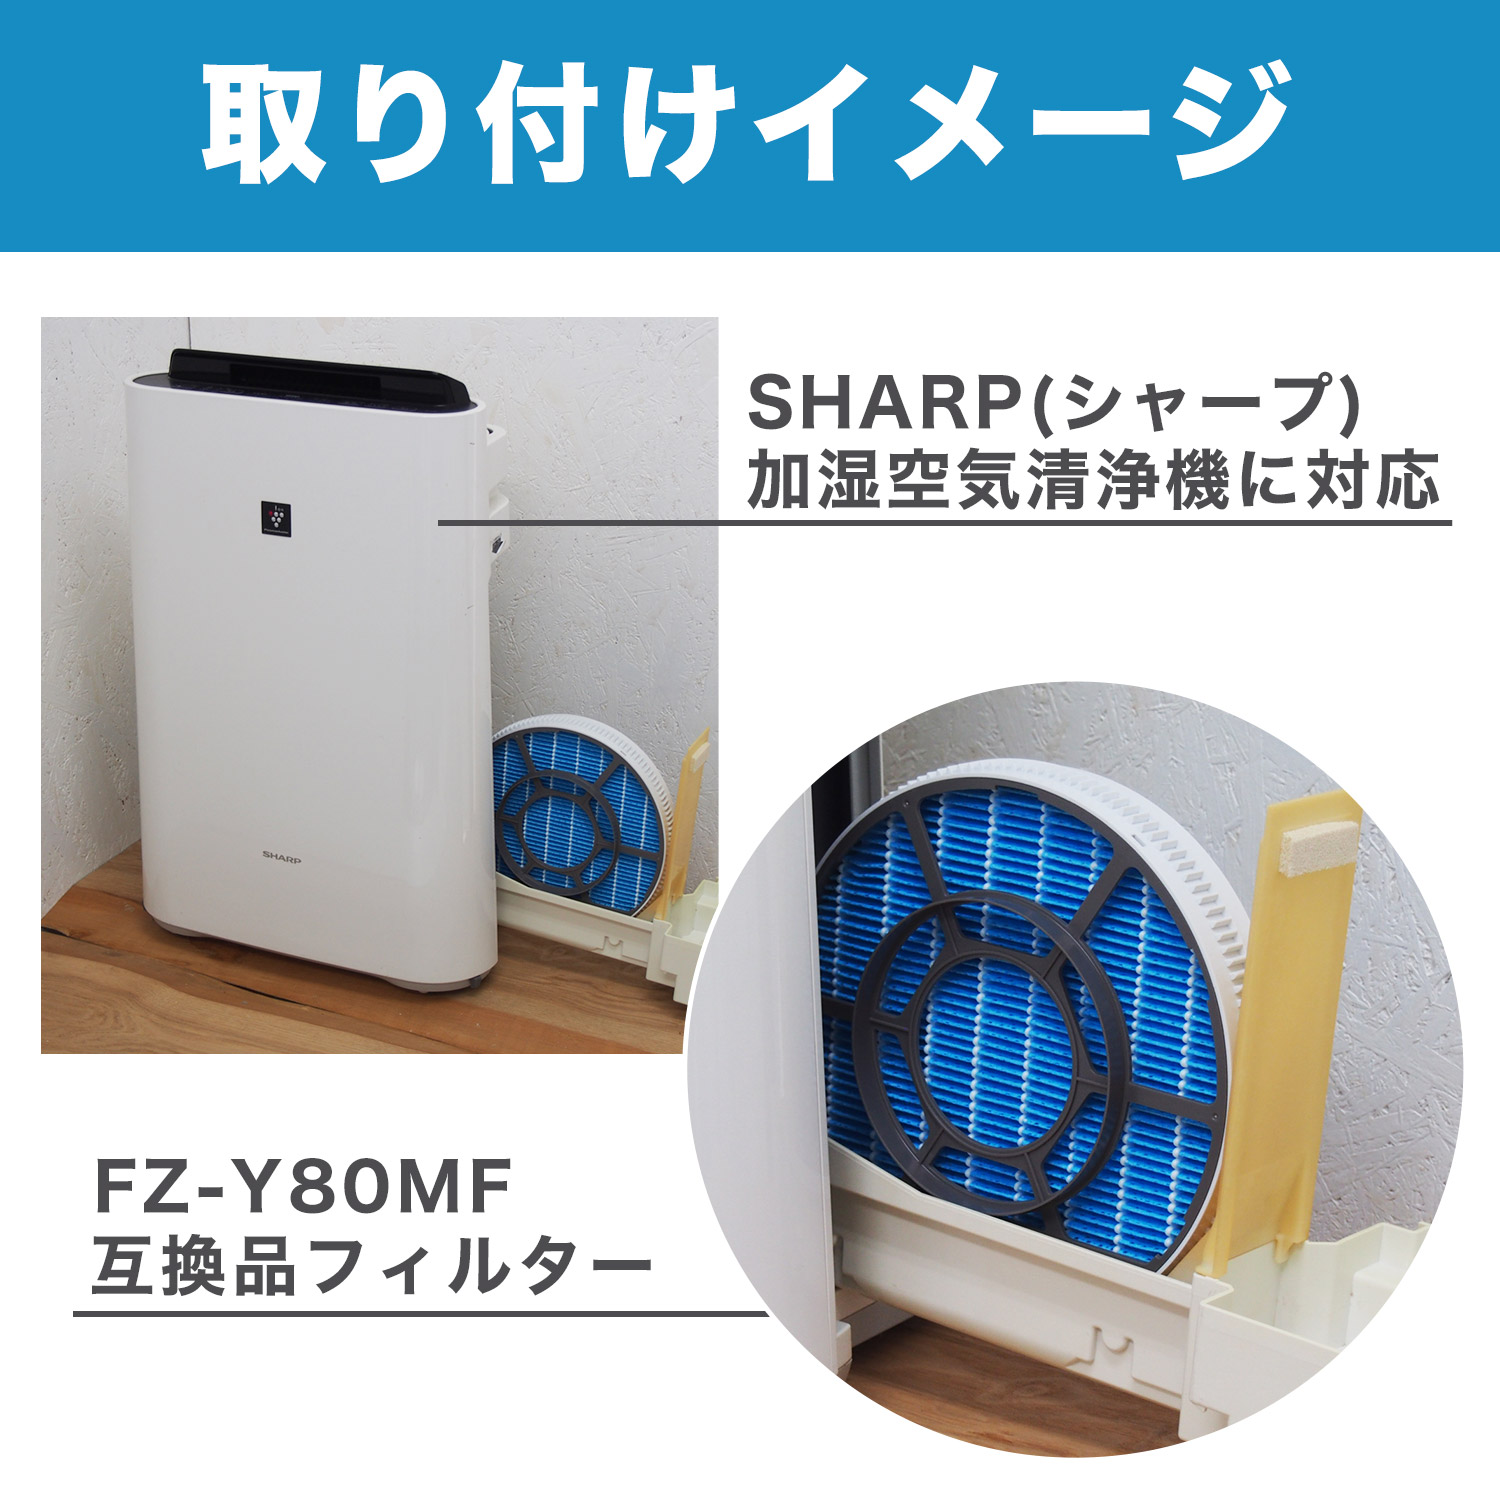 7個まとめ売り) SHARP 空気清浄機用交換フィルター(集じんHEPAフィルター) FZ-A80HF